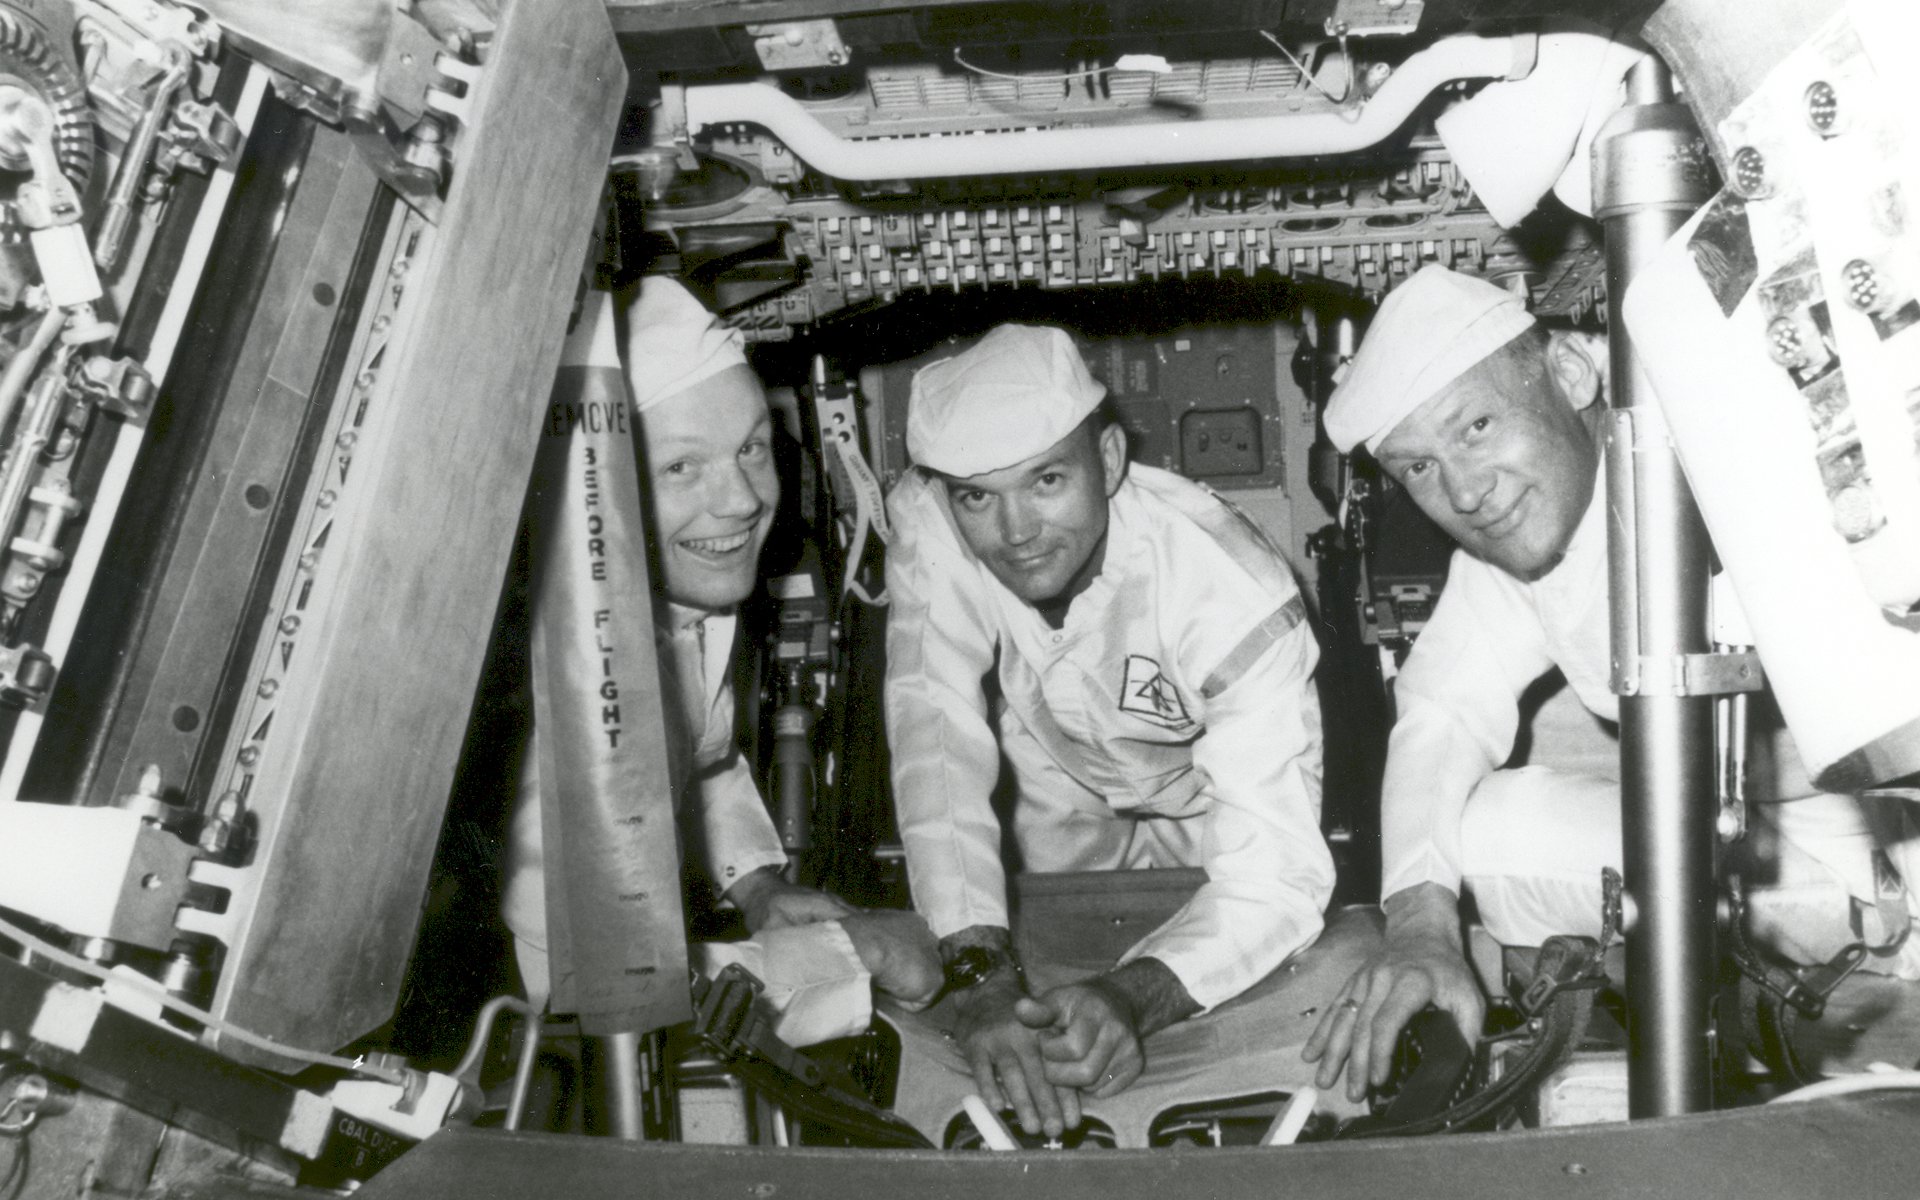 壁纸1920x1200One Giant Leap for Mankind  Apollo 11 Crew Conduct Checks in the Command Module 登月舱日常检查壁纸 阿波罗11号登月40周年纪念壁纸壁纸 阿波罗11号登月40周年纪念壁纸图片 阿波罗11号登月40周年纪念壁纸素材 人文壁纸 人文图库 人文图片素材桌面壁纸